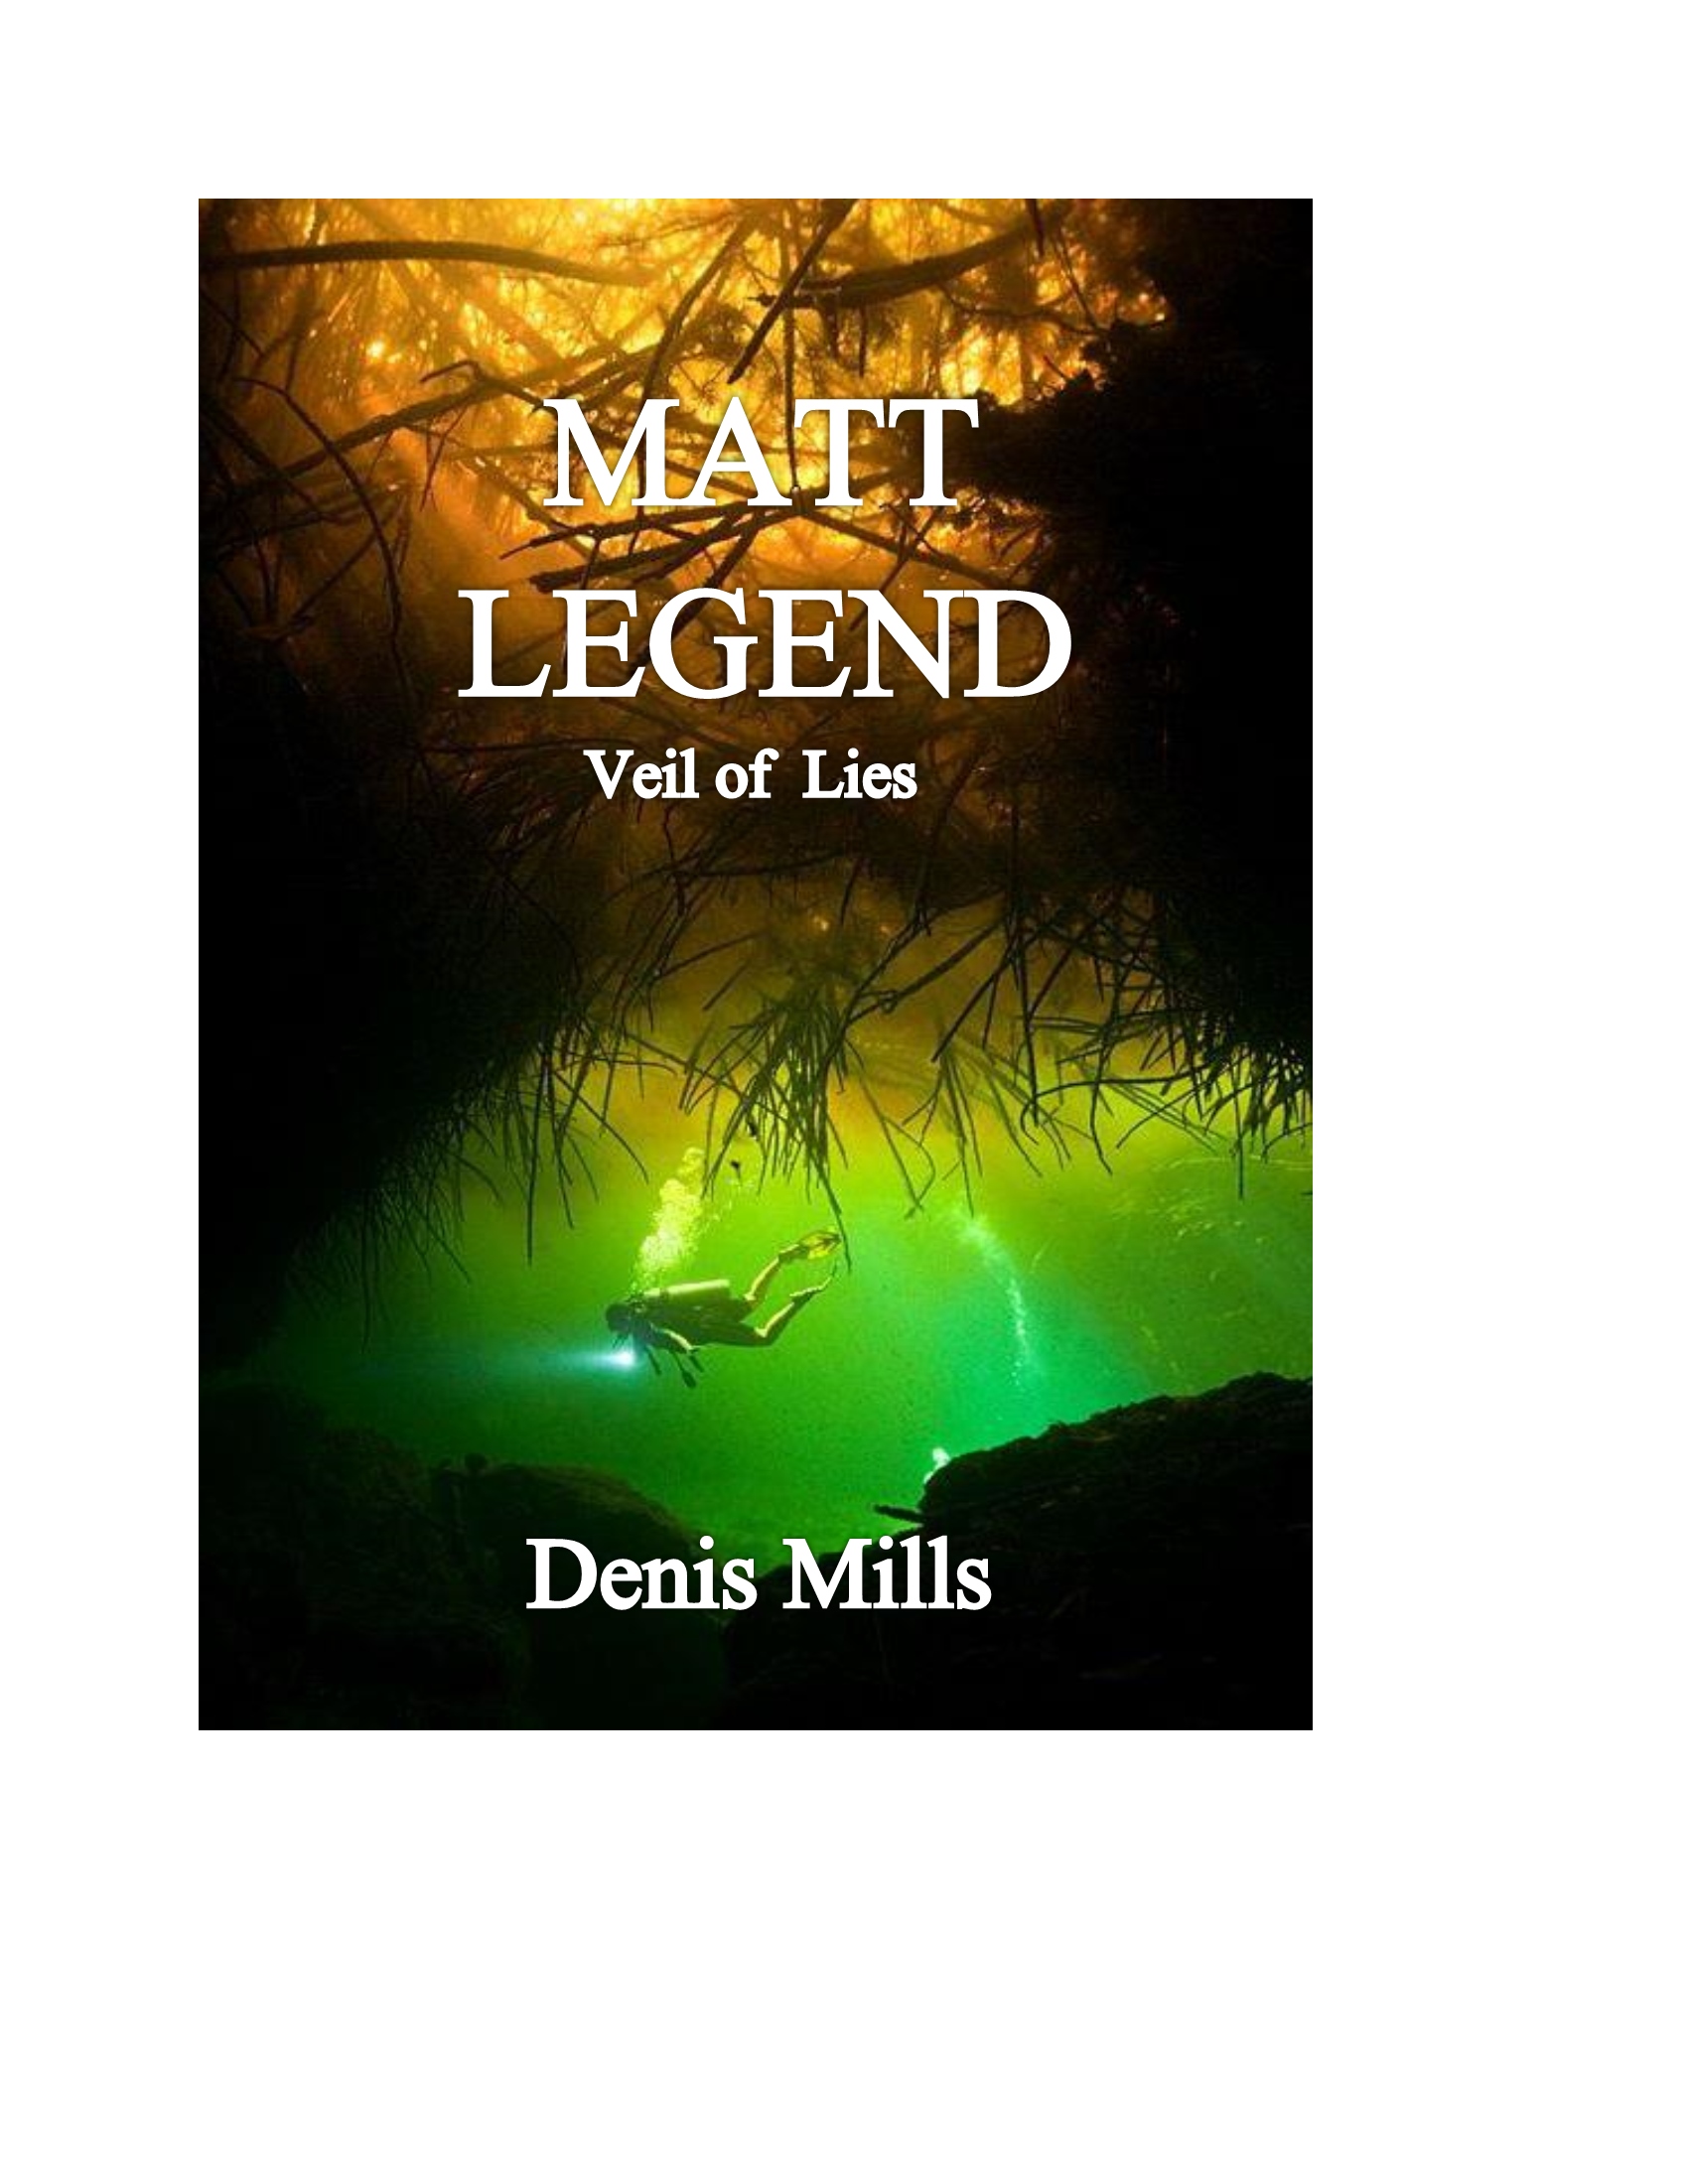 FREE: Matt Legend: Veil of Lies by Denis Mills